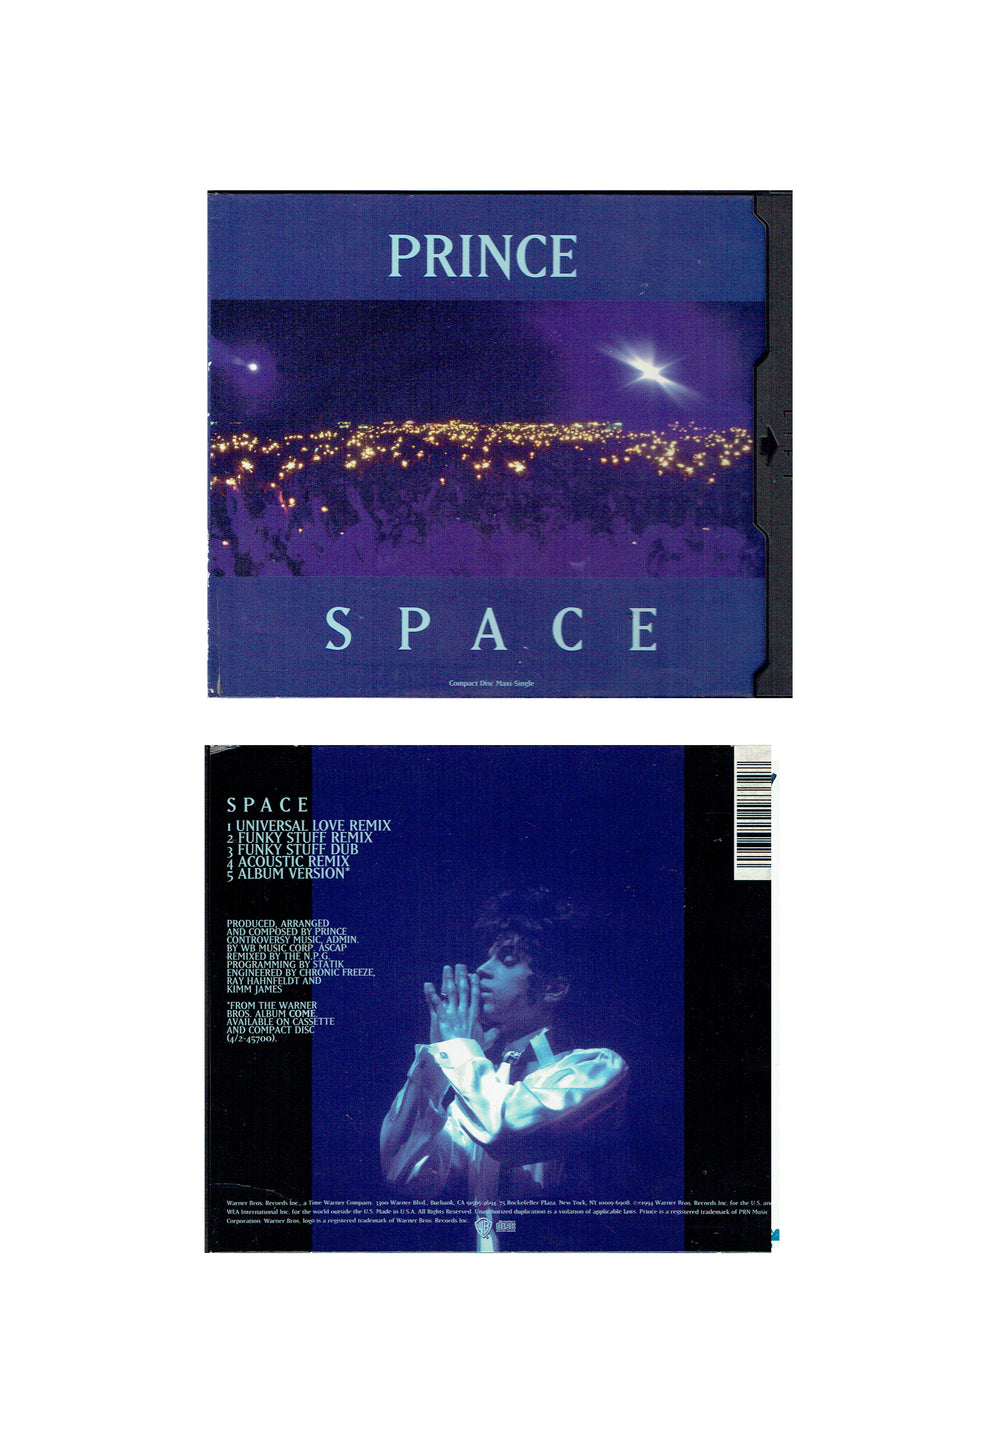 Prince – Space CD Single Maxi Flip Case US Preloved: 1994